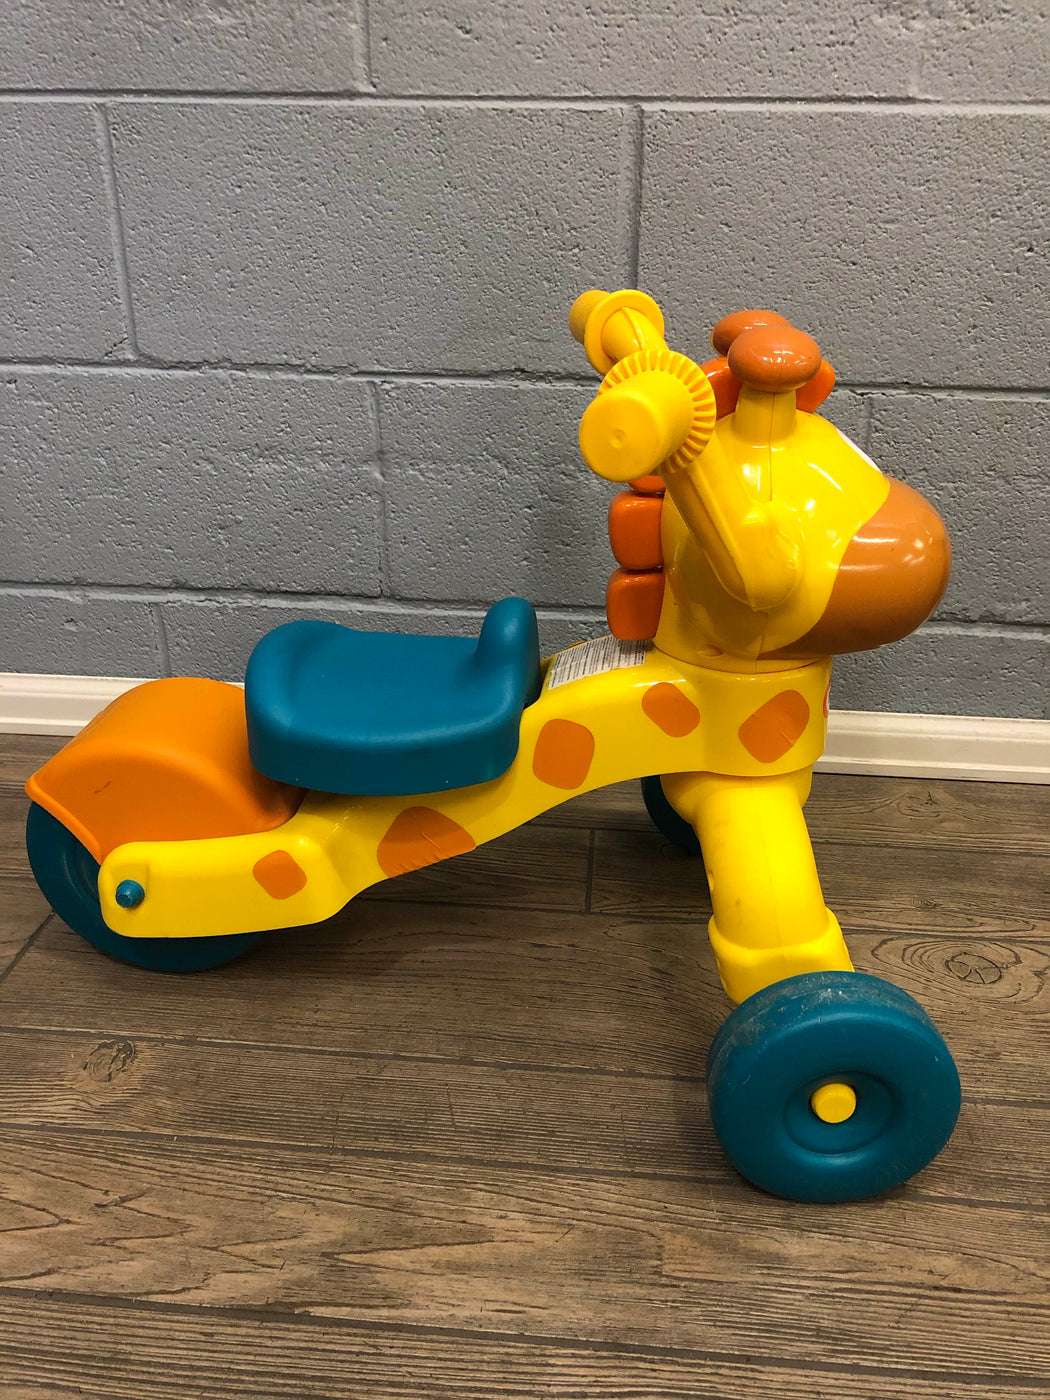 little tikes giraffe scooter